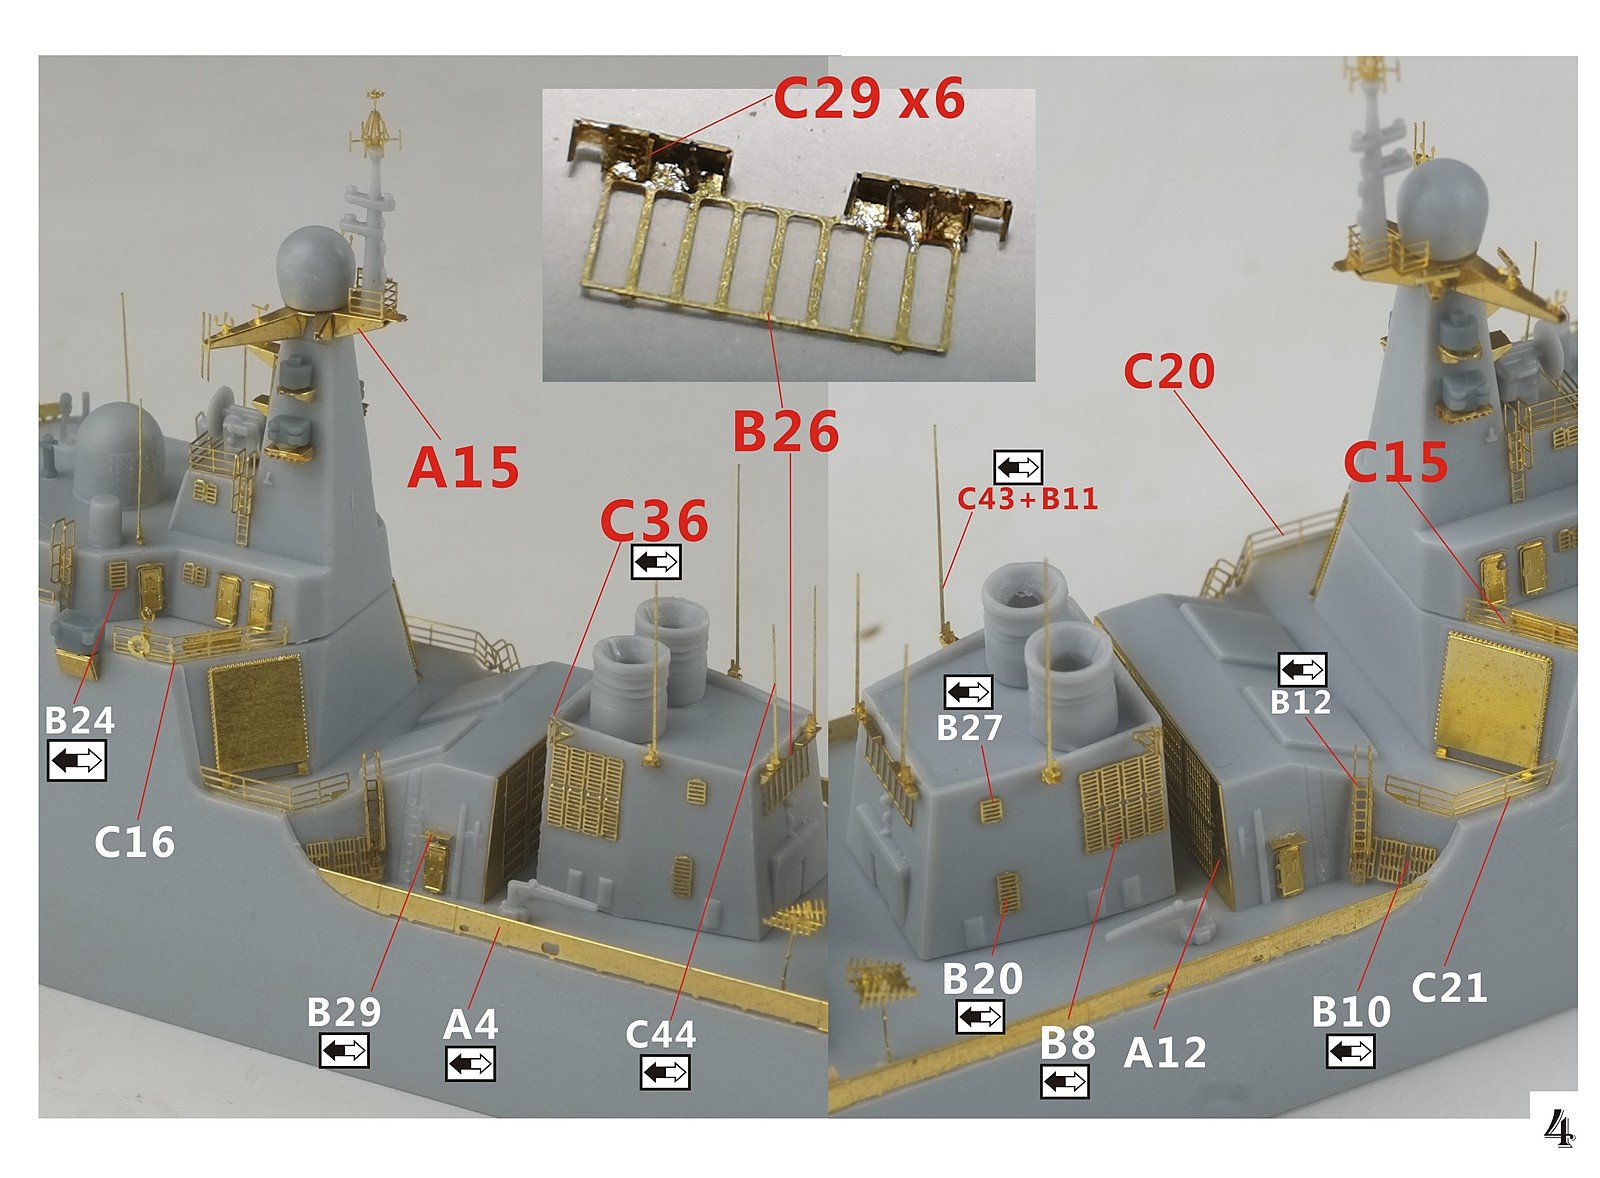 1/700 现代中国海军052DL型驱逐舰升级改造套件(配梦模型DM70017)